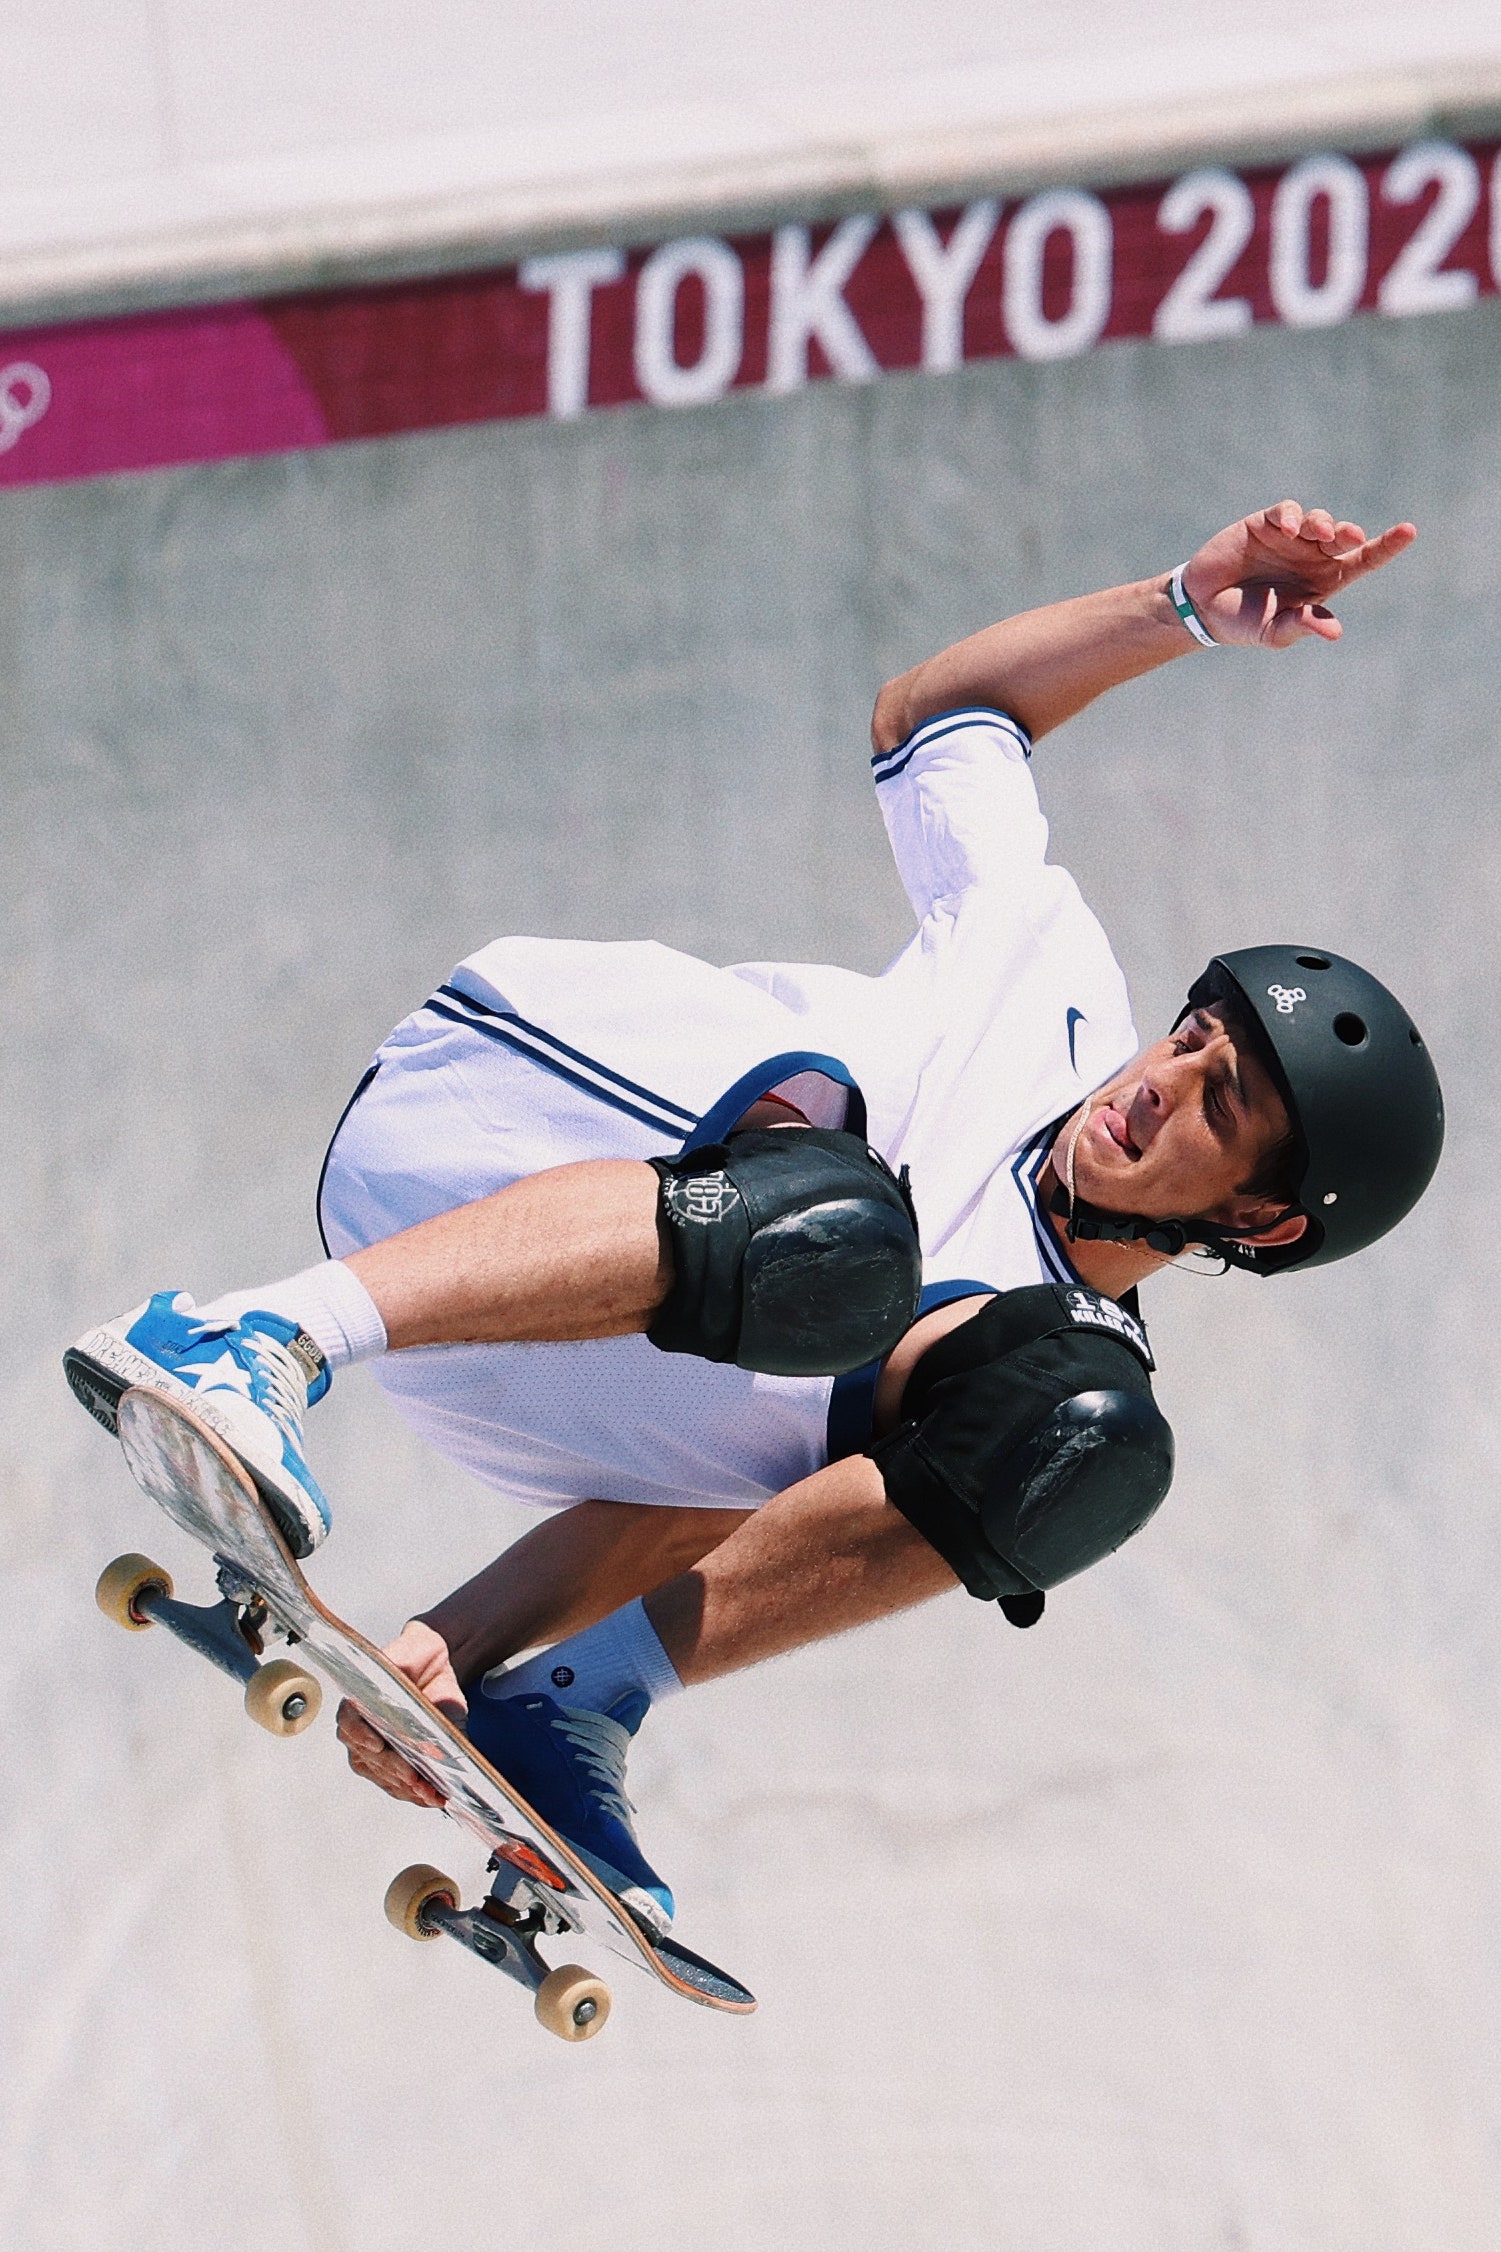 Скейтбордист Кори Джуно выступал на Олимпийских играх в Токио в кроссовках Golden Goose. Что надо о них знать